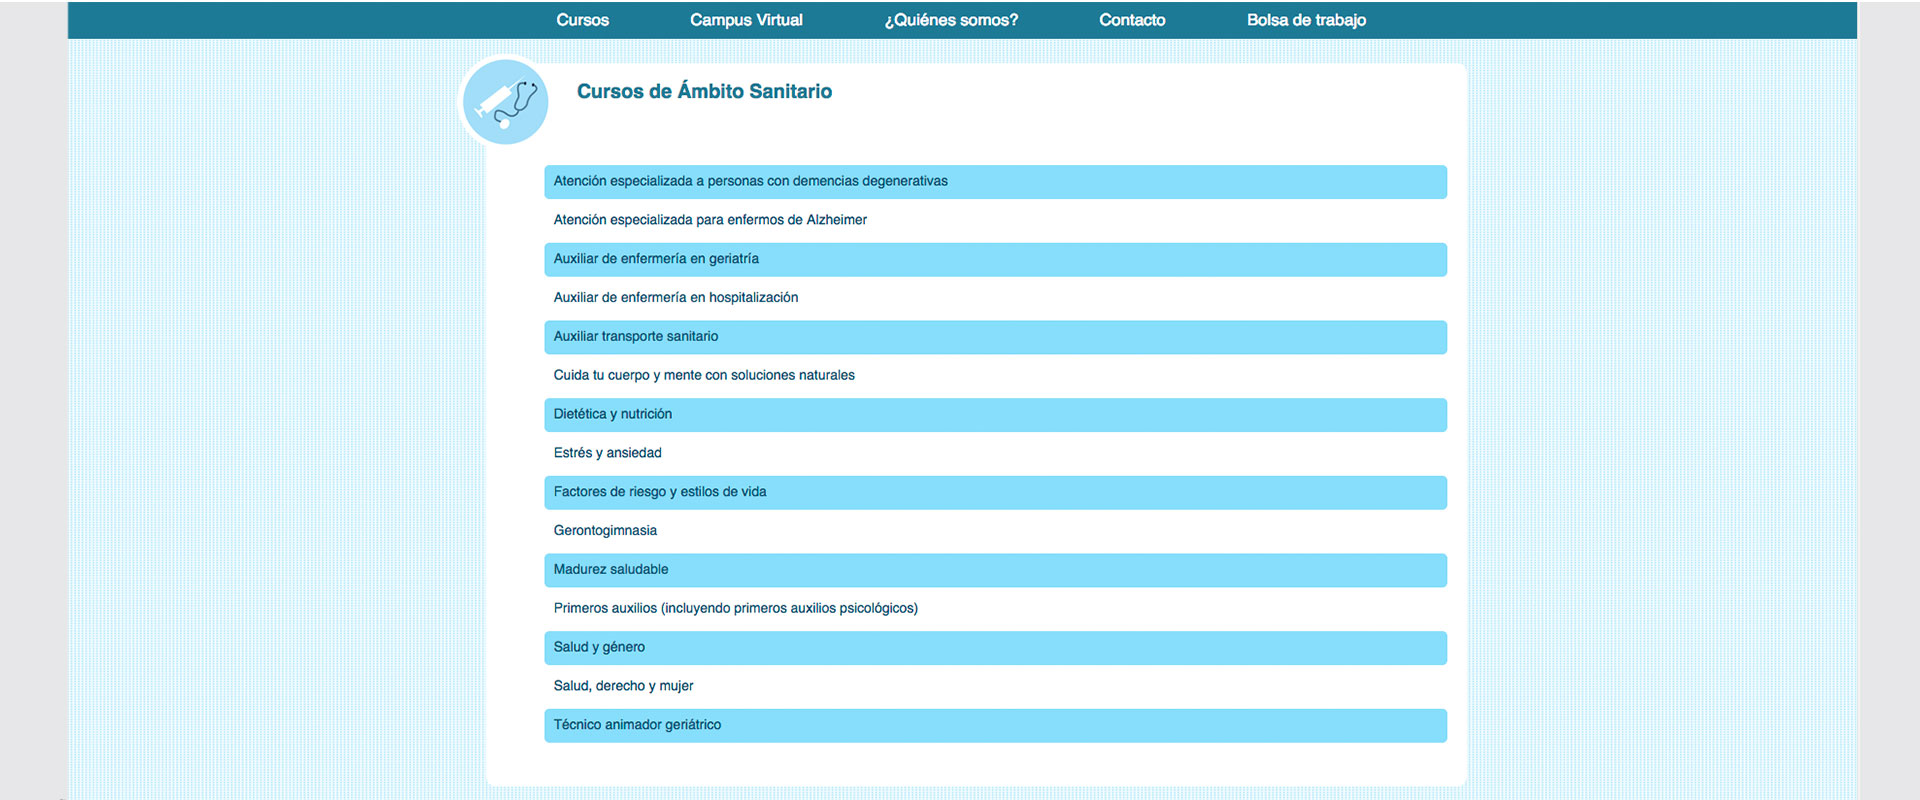 Página web, sección cursos de ámbito sanitario